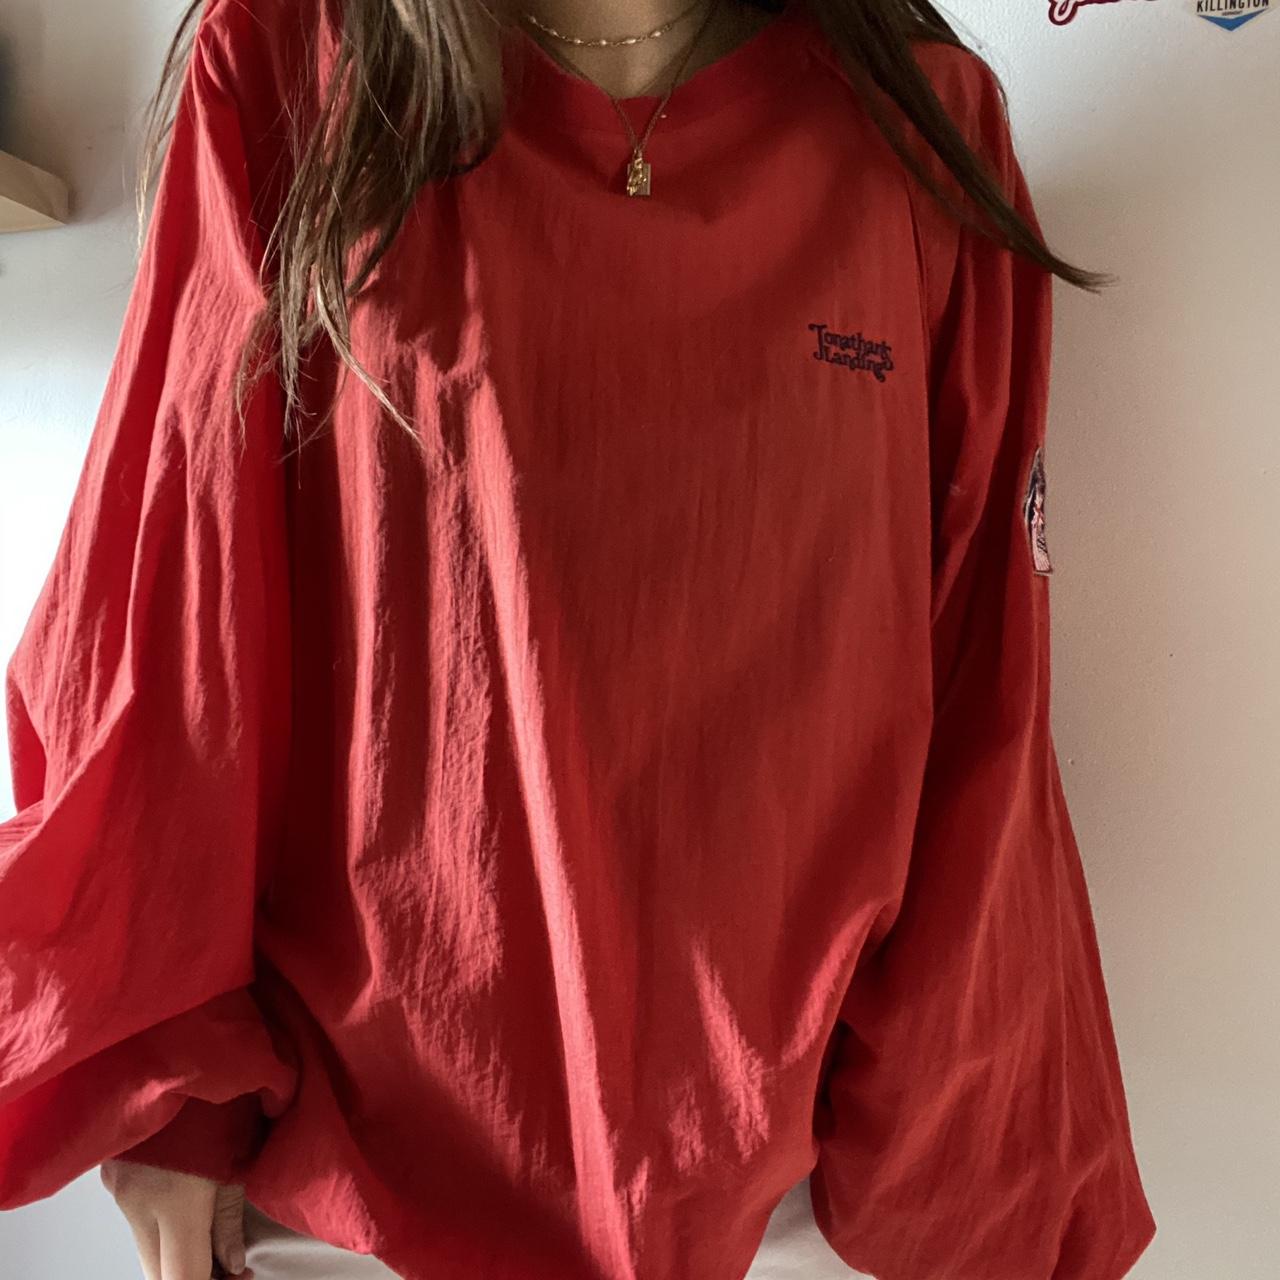 Slazenger Women's Red Sweatshirt (2)